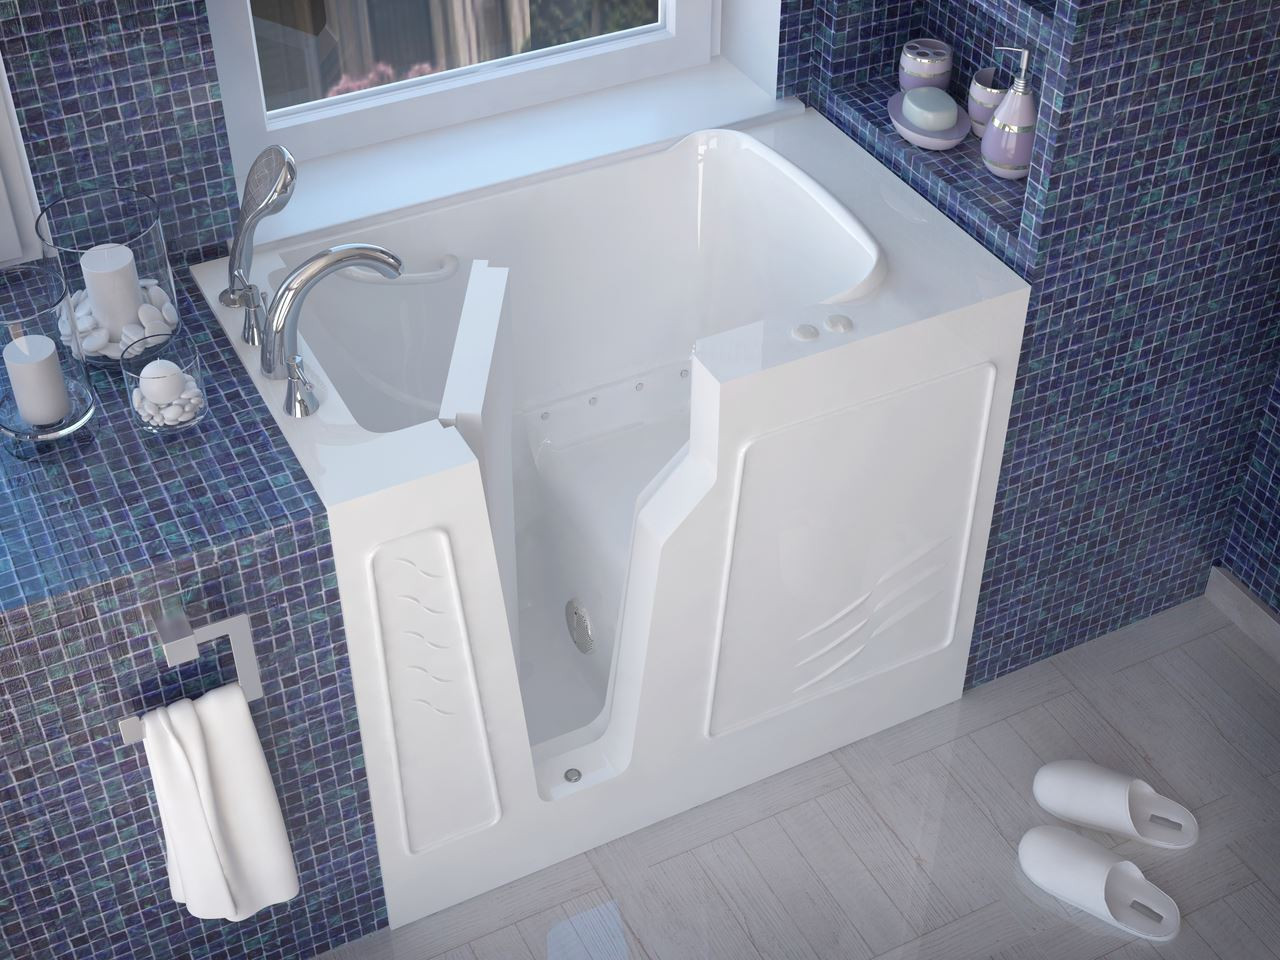 Compact Walkin Bathtub by Meditub High Quality US Made